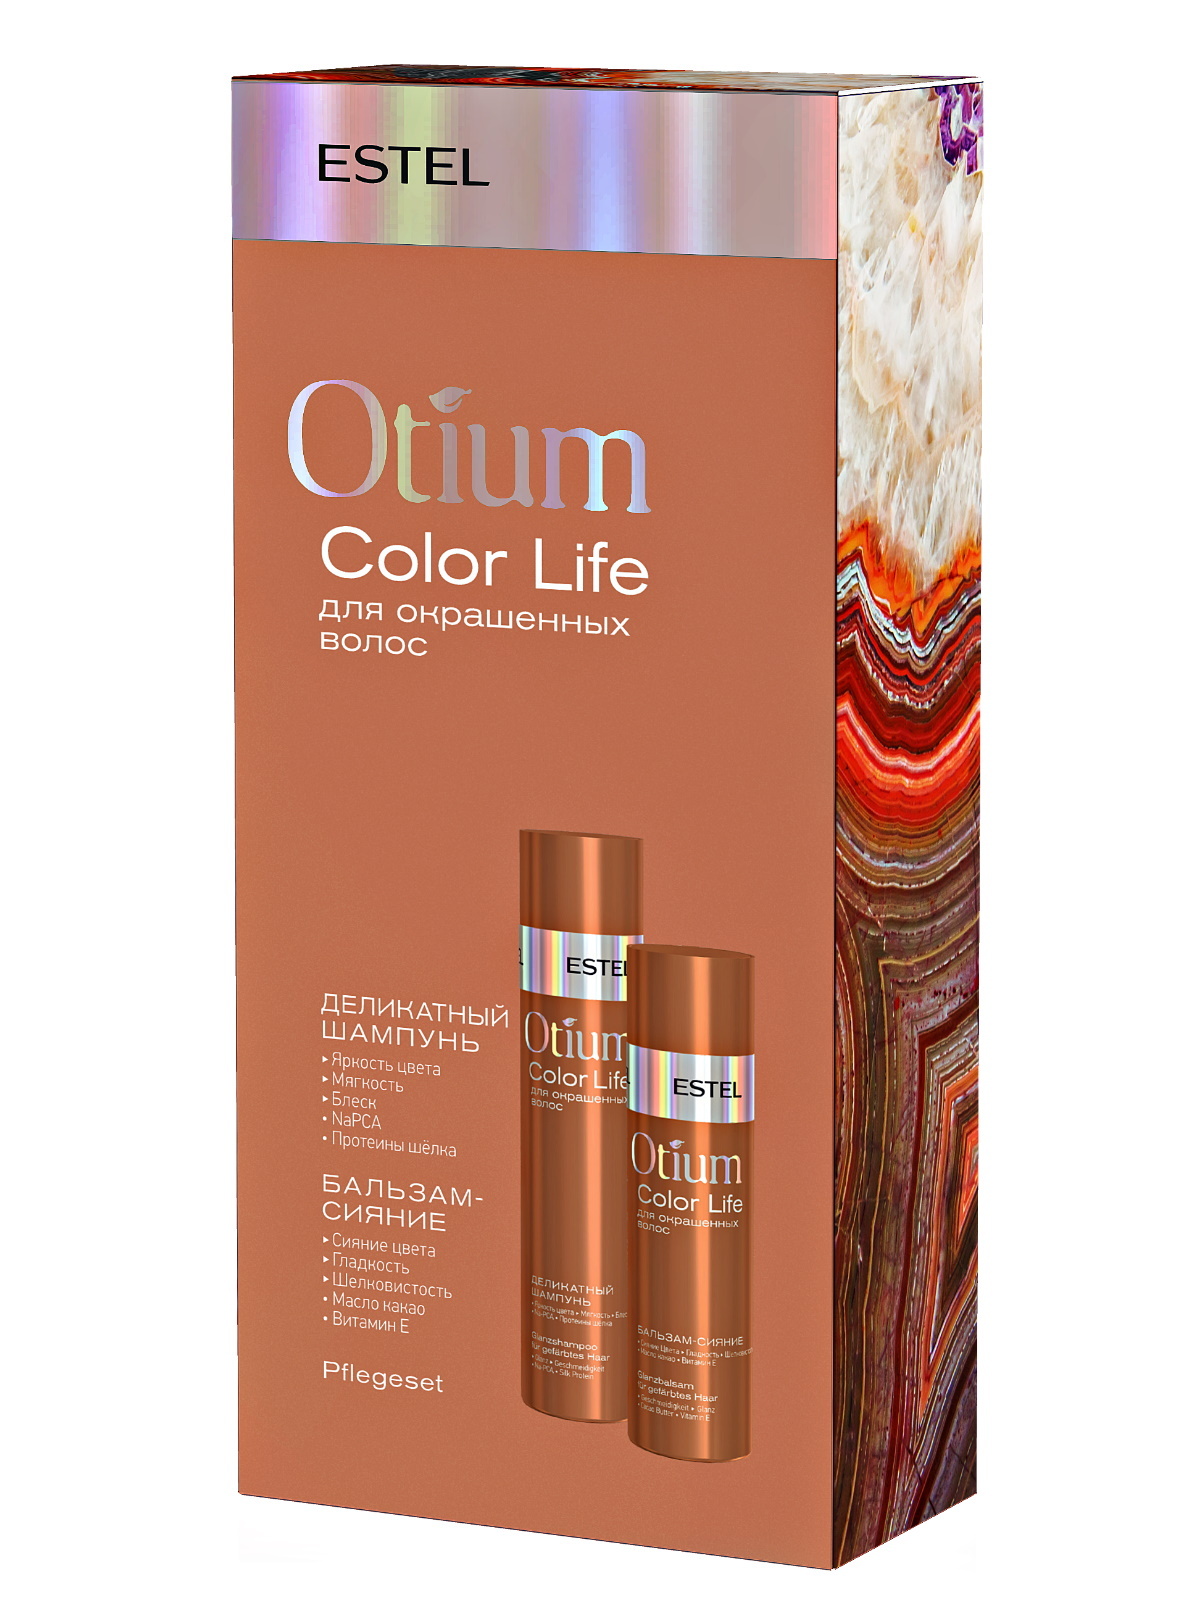 Otium color life. Набор Otium Color Life для окрашенных. Набор Otium Color Life для окрашенных волос. Наборы Otium Estel. Estel professional косметический набор Otium Color Life для окрашенных волос 250+200 мл.